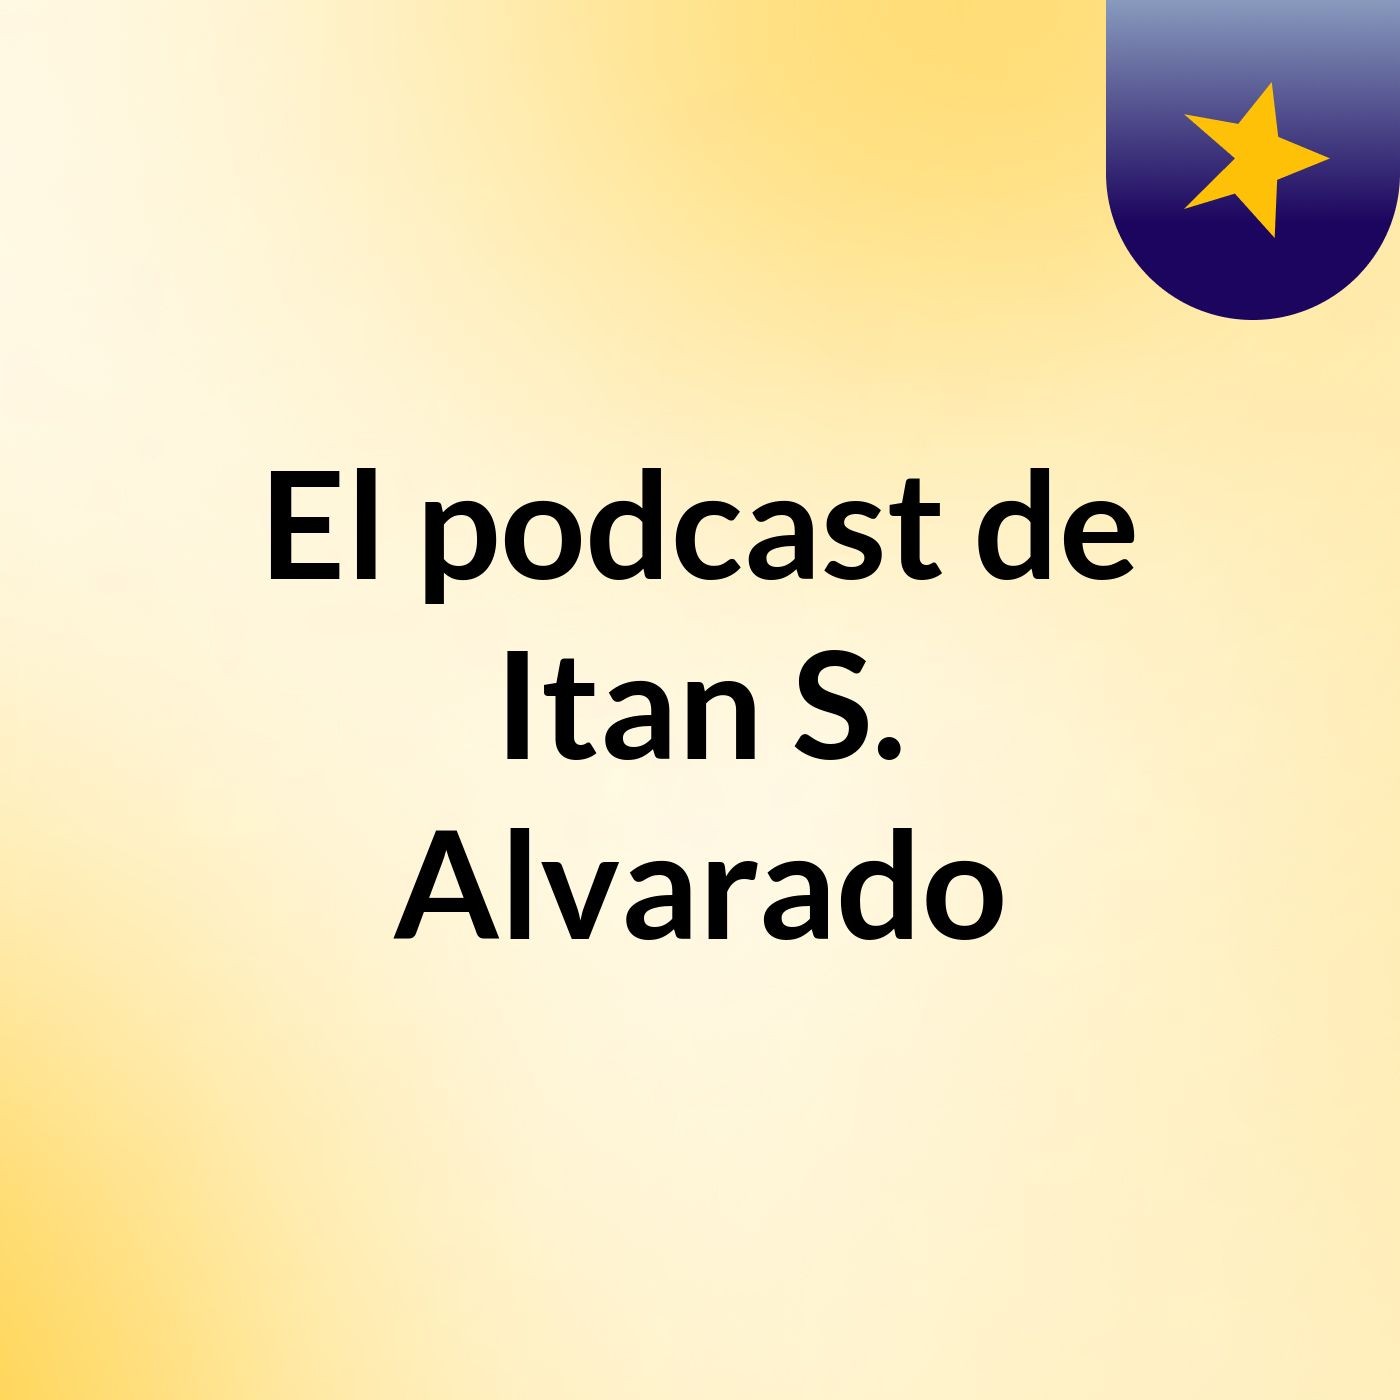 El podcast de Itan S. Alvarado